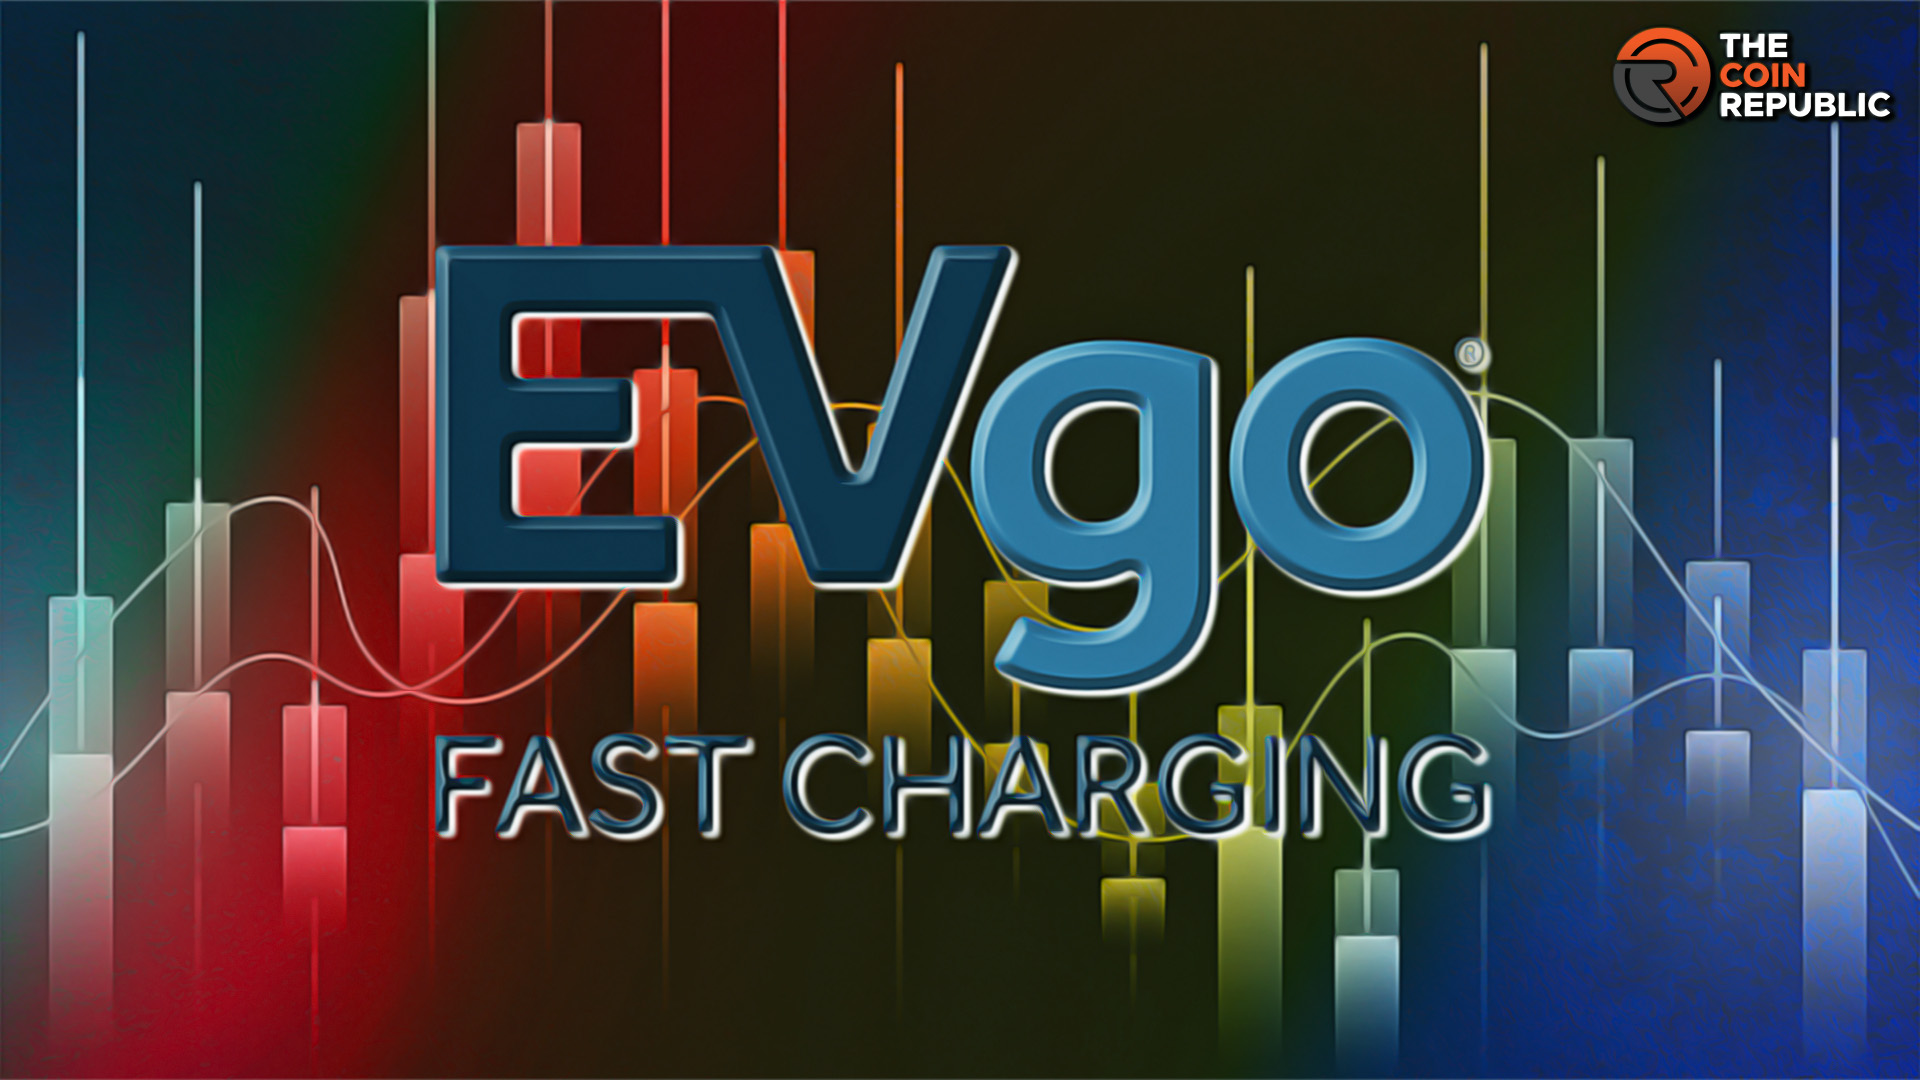 Evgo Inc NASDAQ: EVGO Stock Price Faces Sustainability Issues